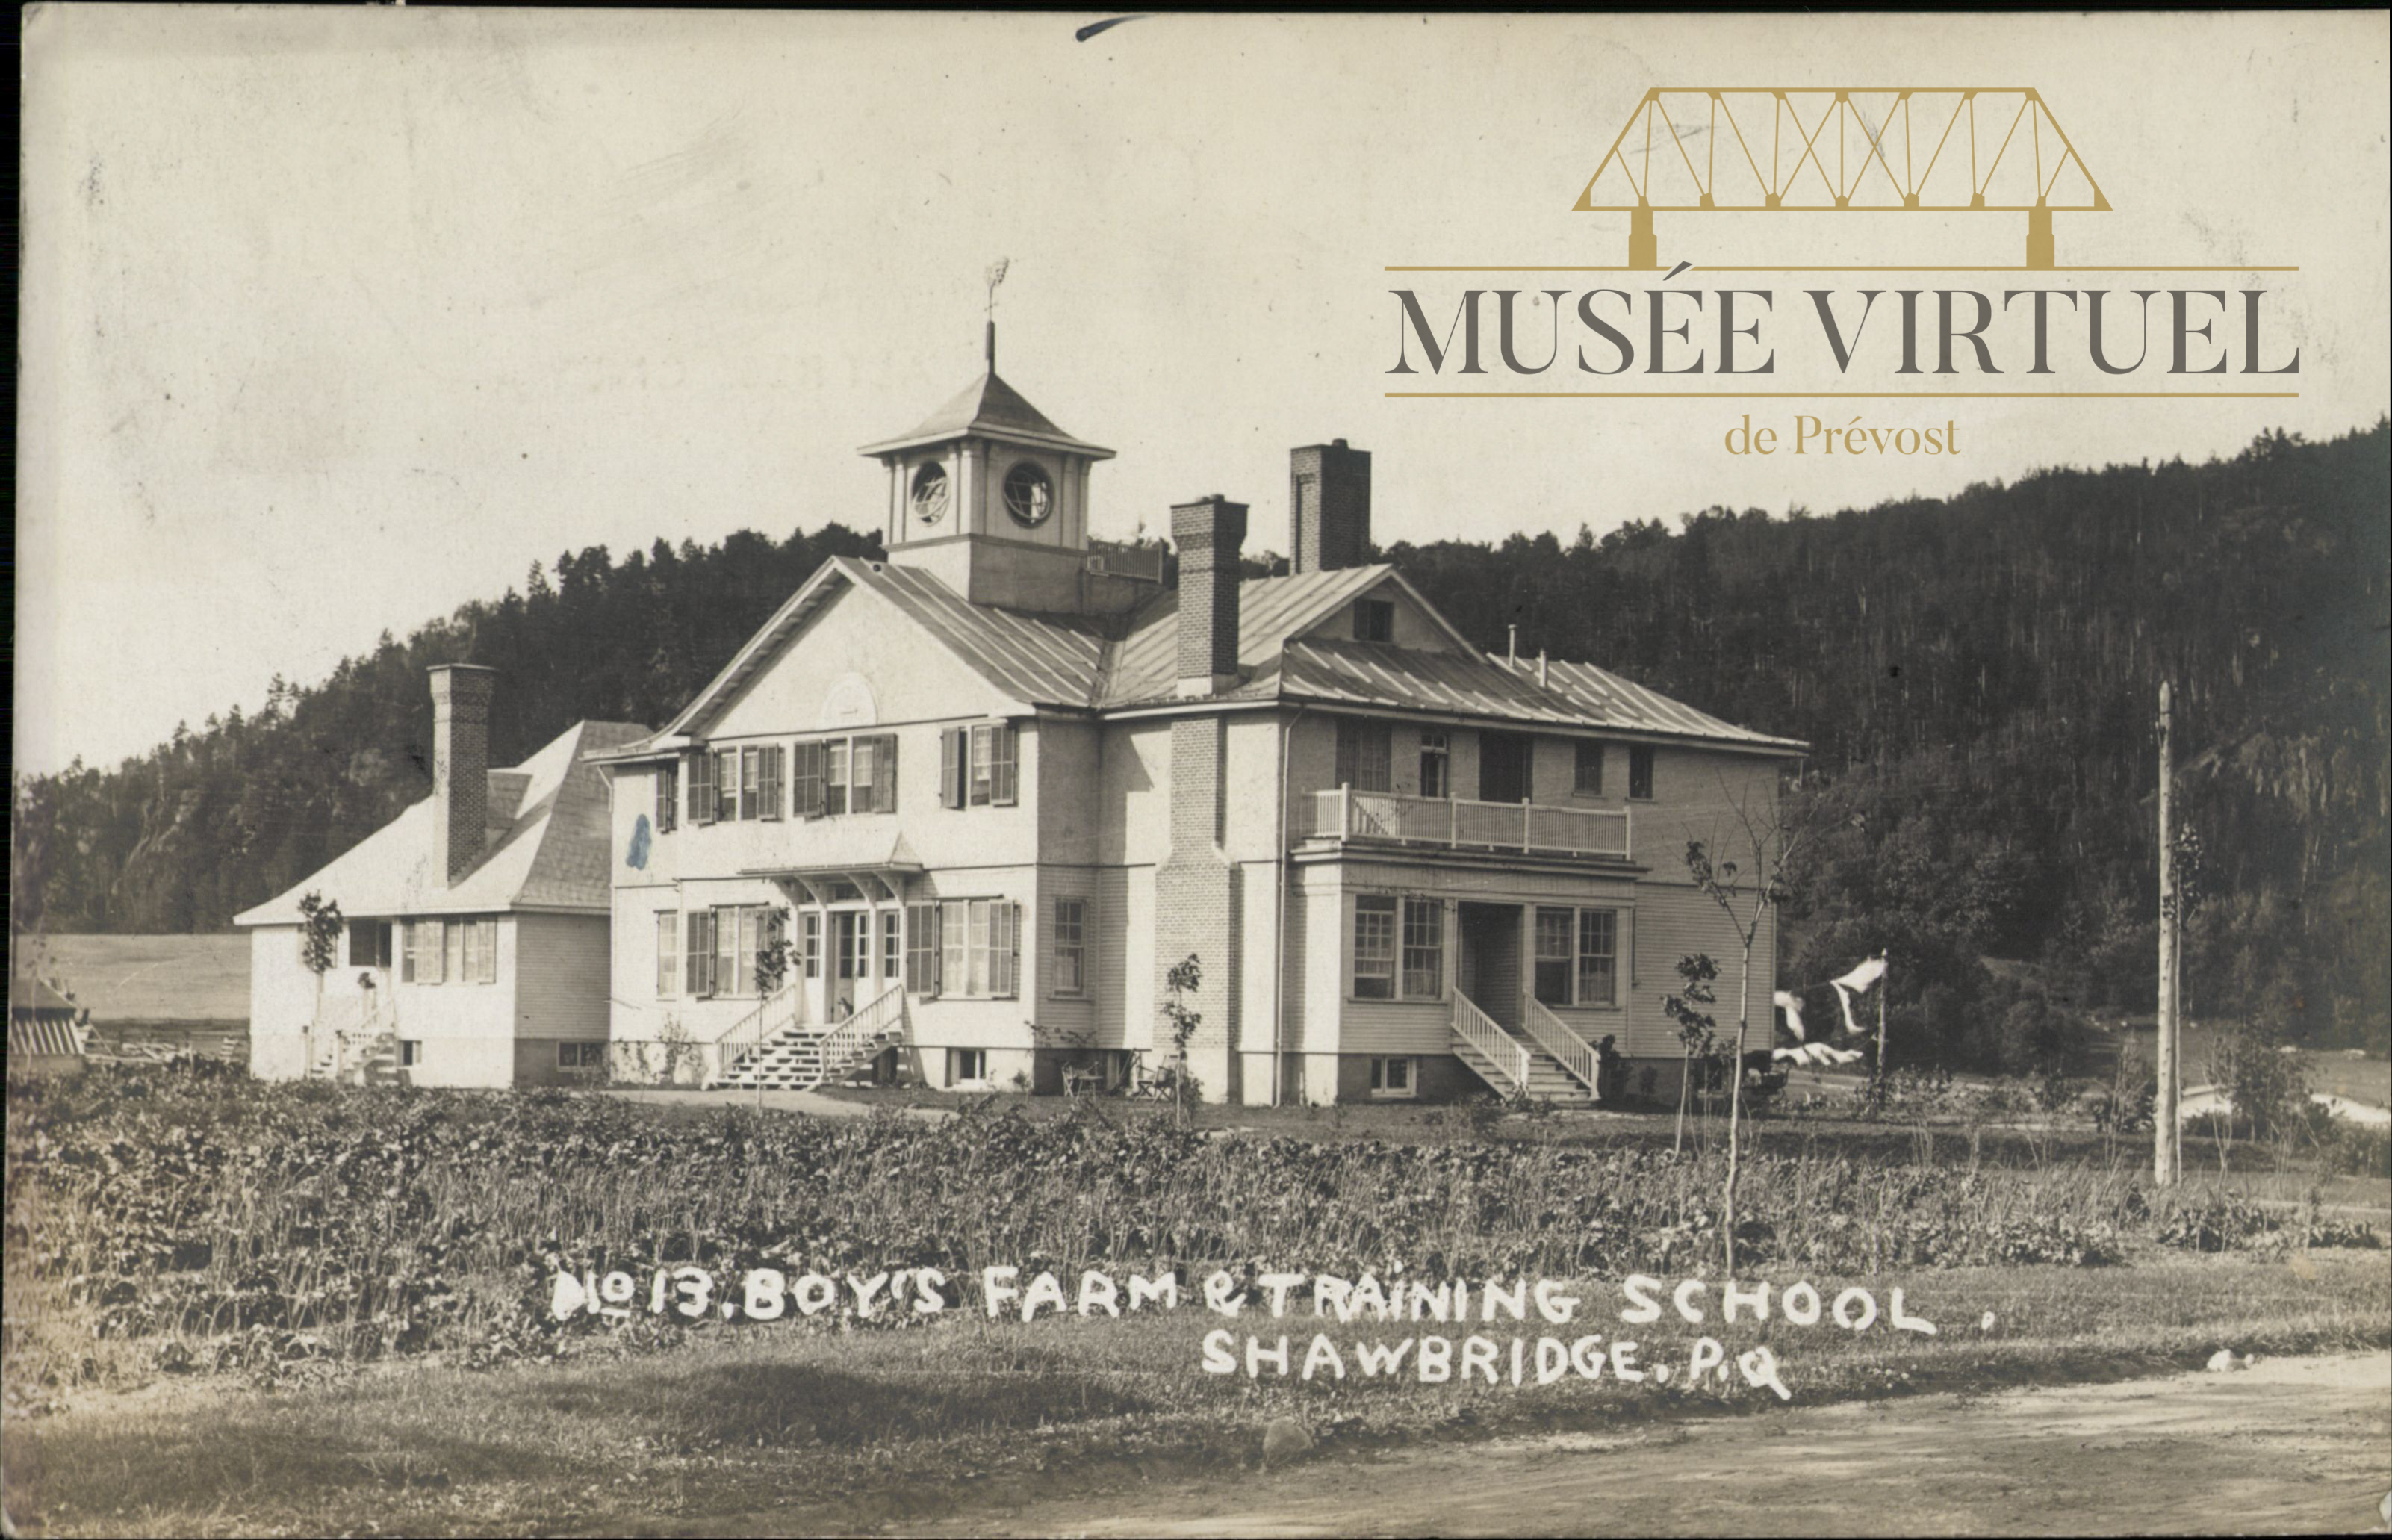 9. Le Boy's Farm & Training School - Collection de Bibliothèque et Archives nationales du Québec